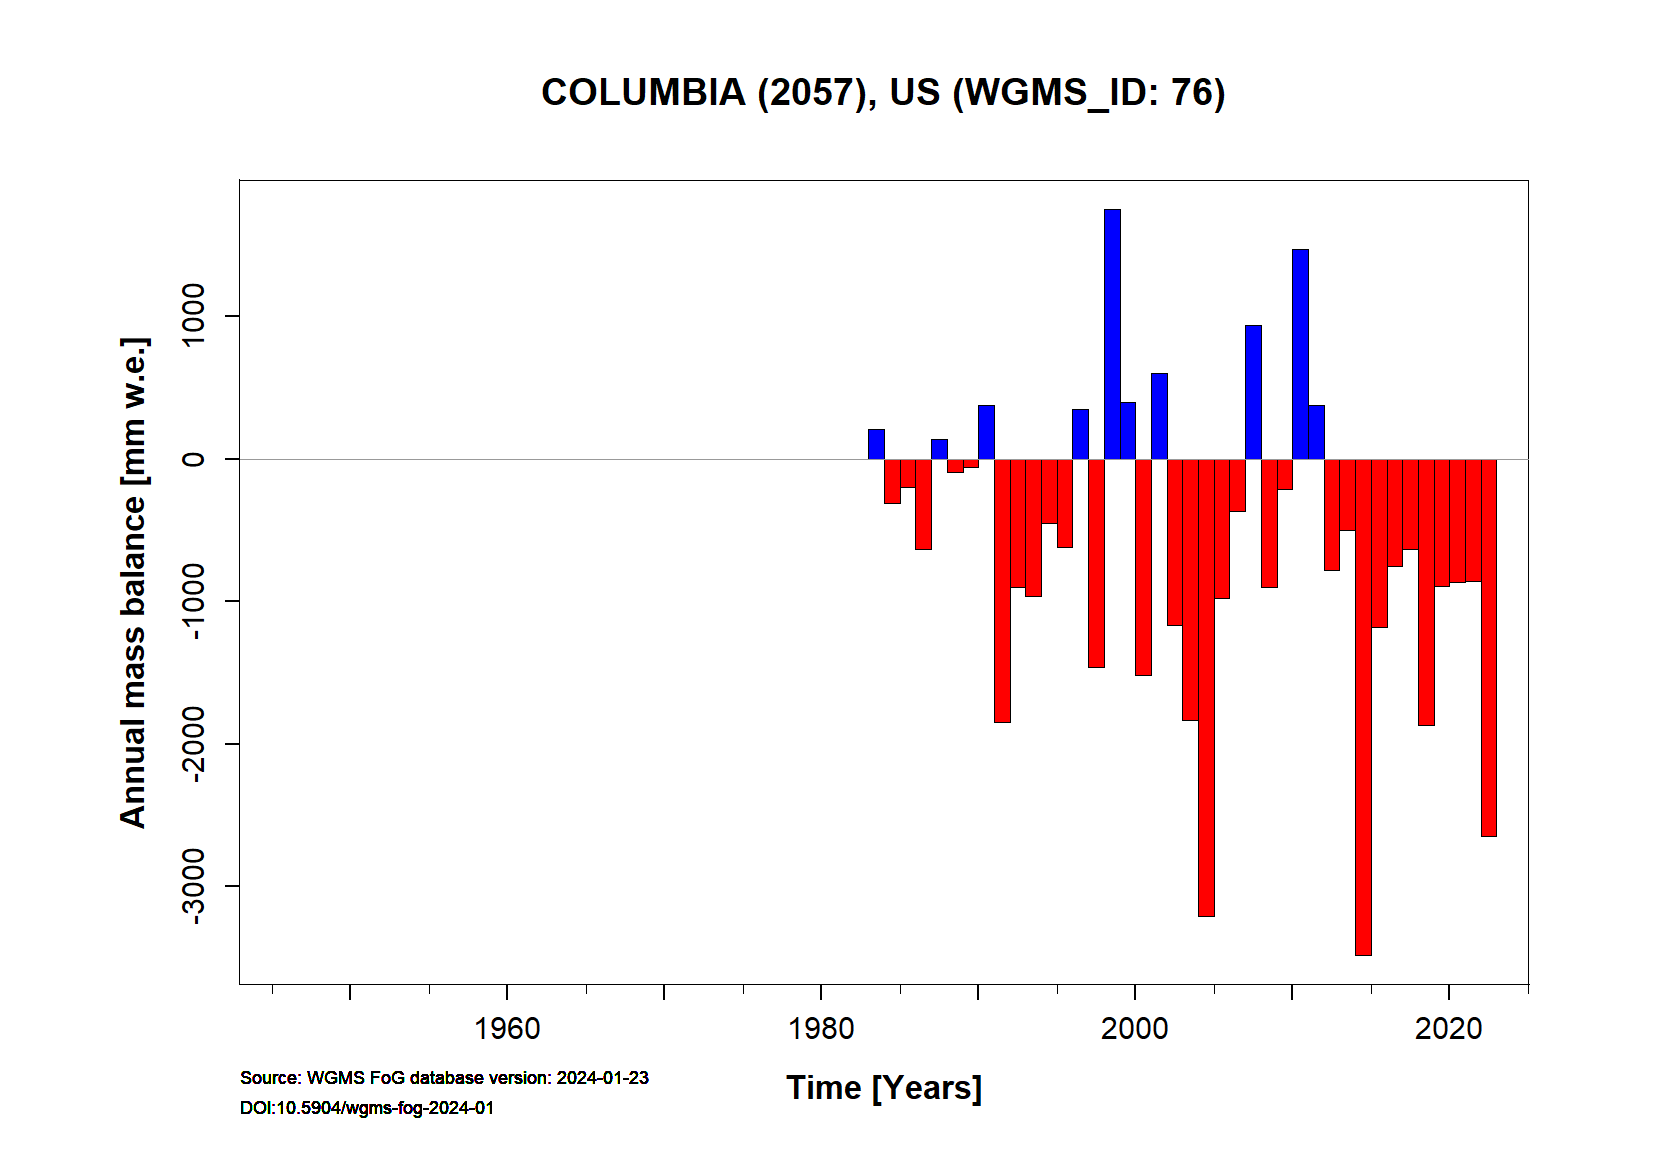 Columbia (2057) Annual Mass Balance (WGMS, 2017)